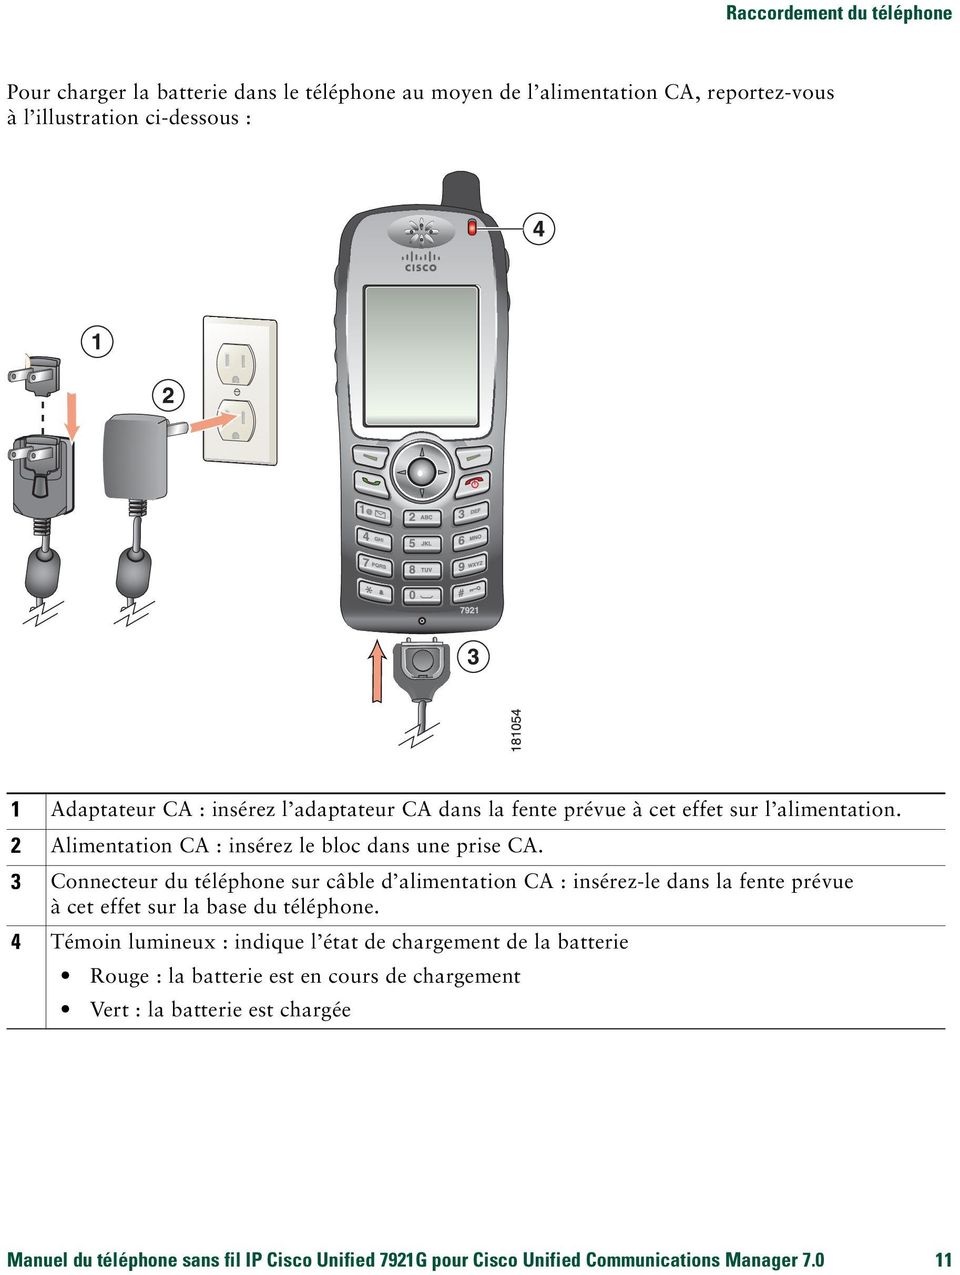 3 Connecteur du téléphone sur câble d alimentation CA : insérez-le dans la fente prévue à cet effet sur la base du téléphone.